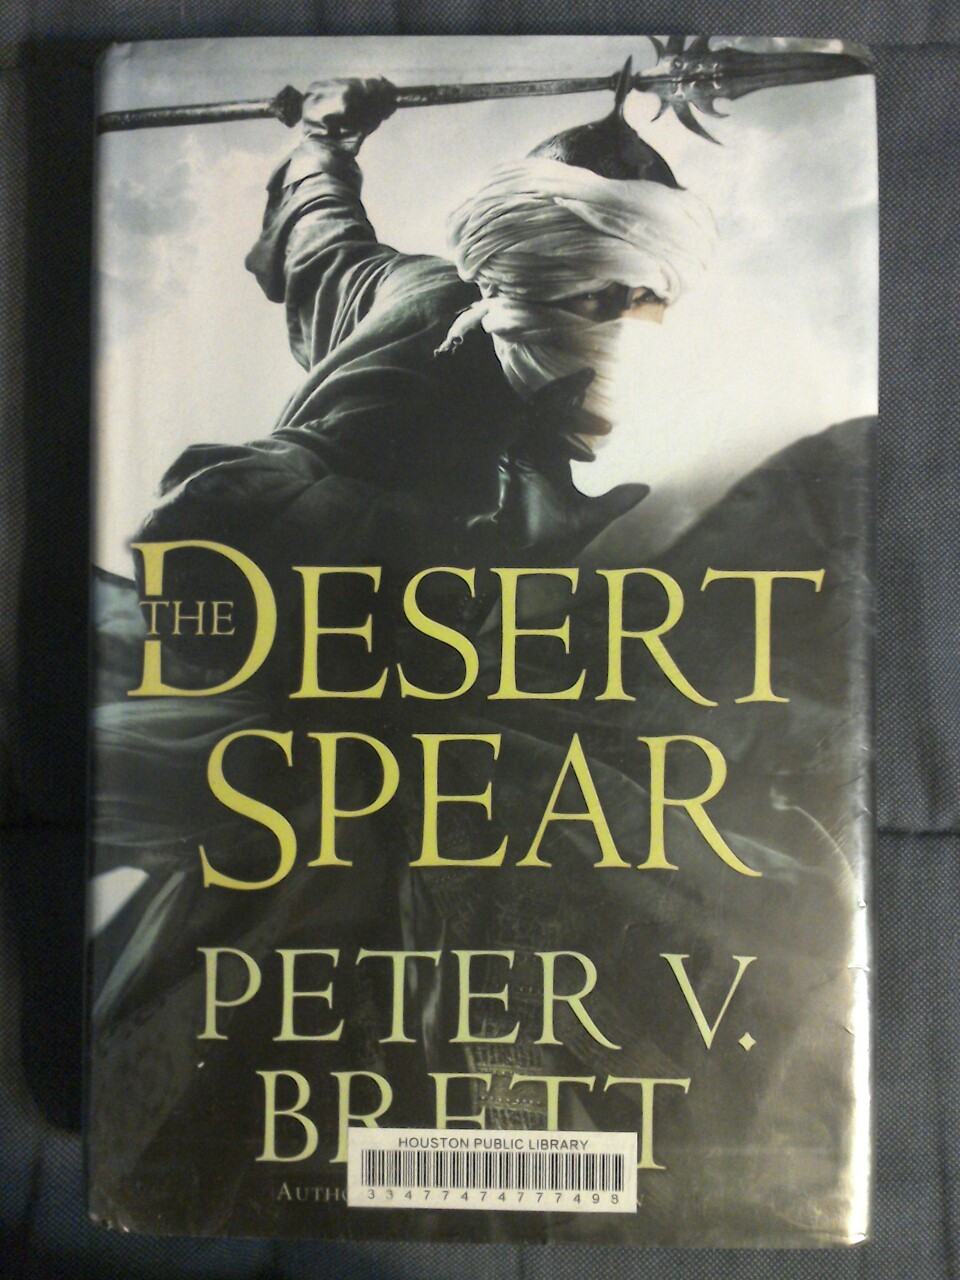 The Desert Spear by Peter V. Brett